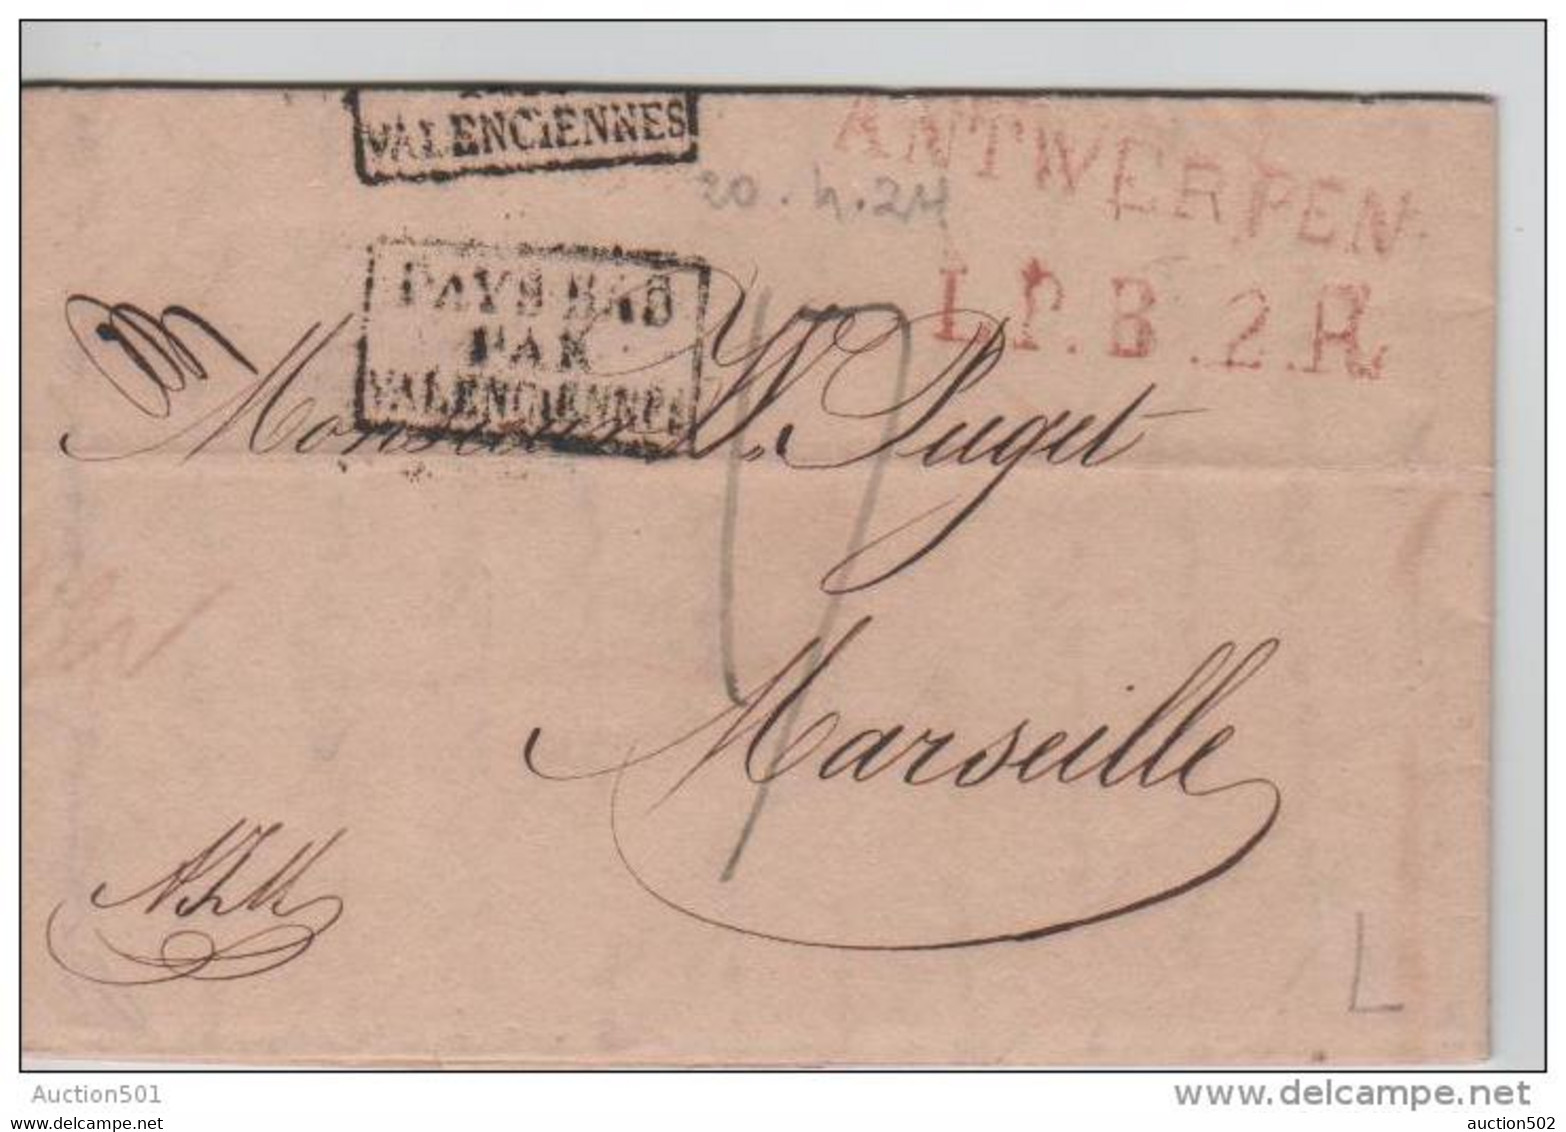 00746a Anvers 1824 Précurseur- Voorloper Antwerpen L.P.B.2.R 17 Déc. Gff Pays-Bas Par Valencienne V. Marseille - 1815-1830 (Periodo Holandes)